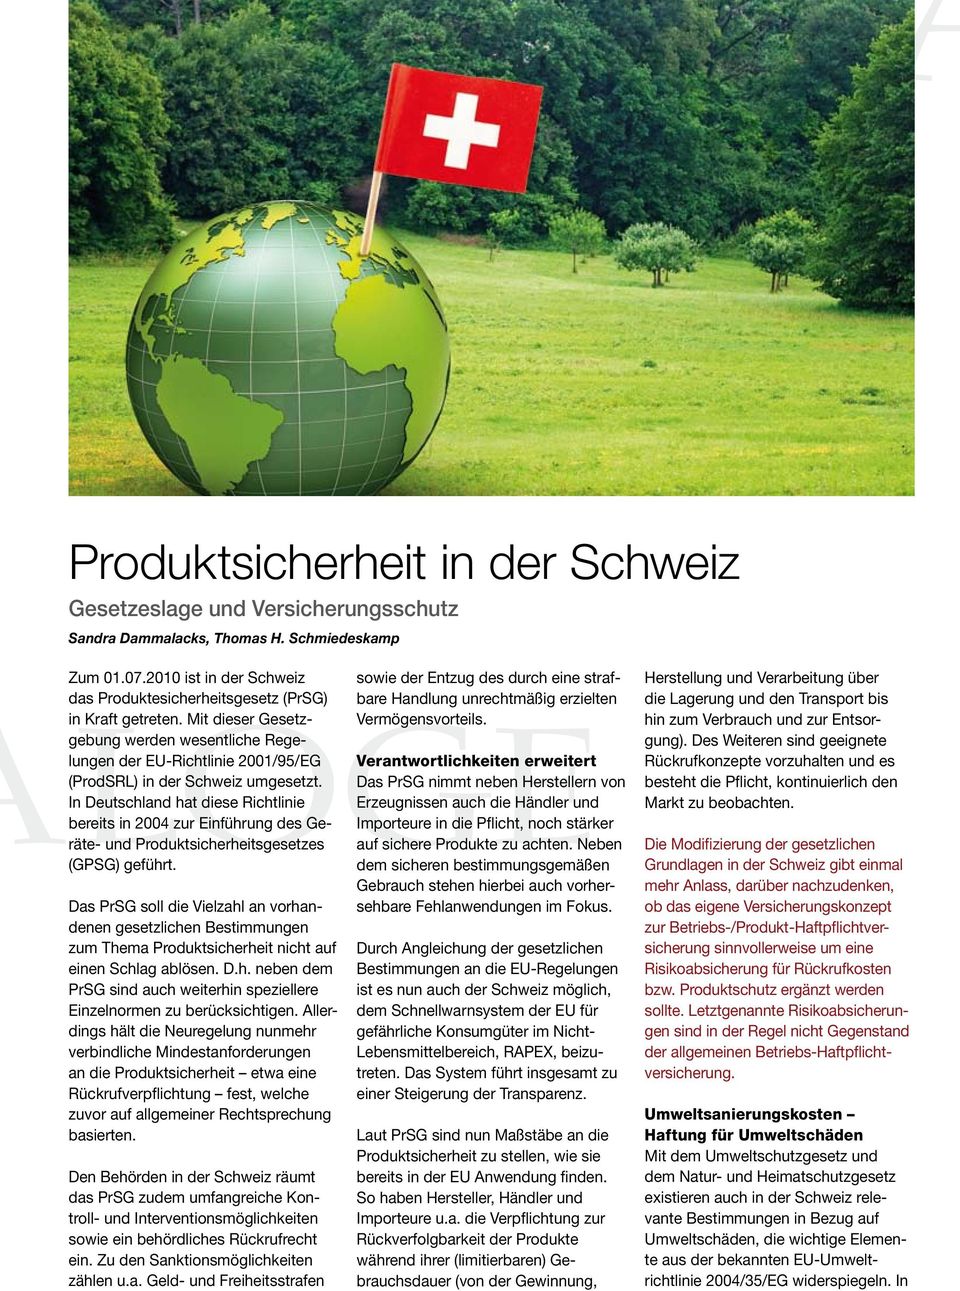 In Deutschland hat diese Richtlinie bereits in 2004 zur Einführung des Geräte- und Produkt sicherheitsgesetzes (GPSG) geführt.